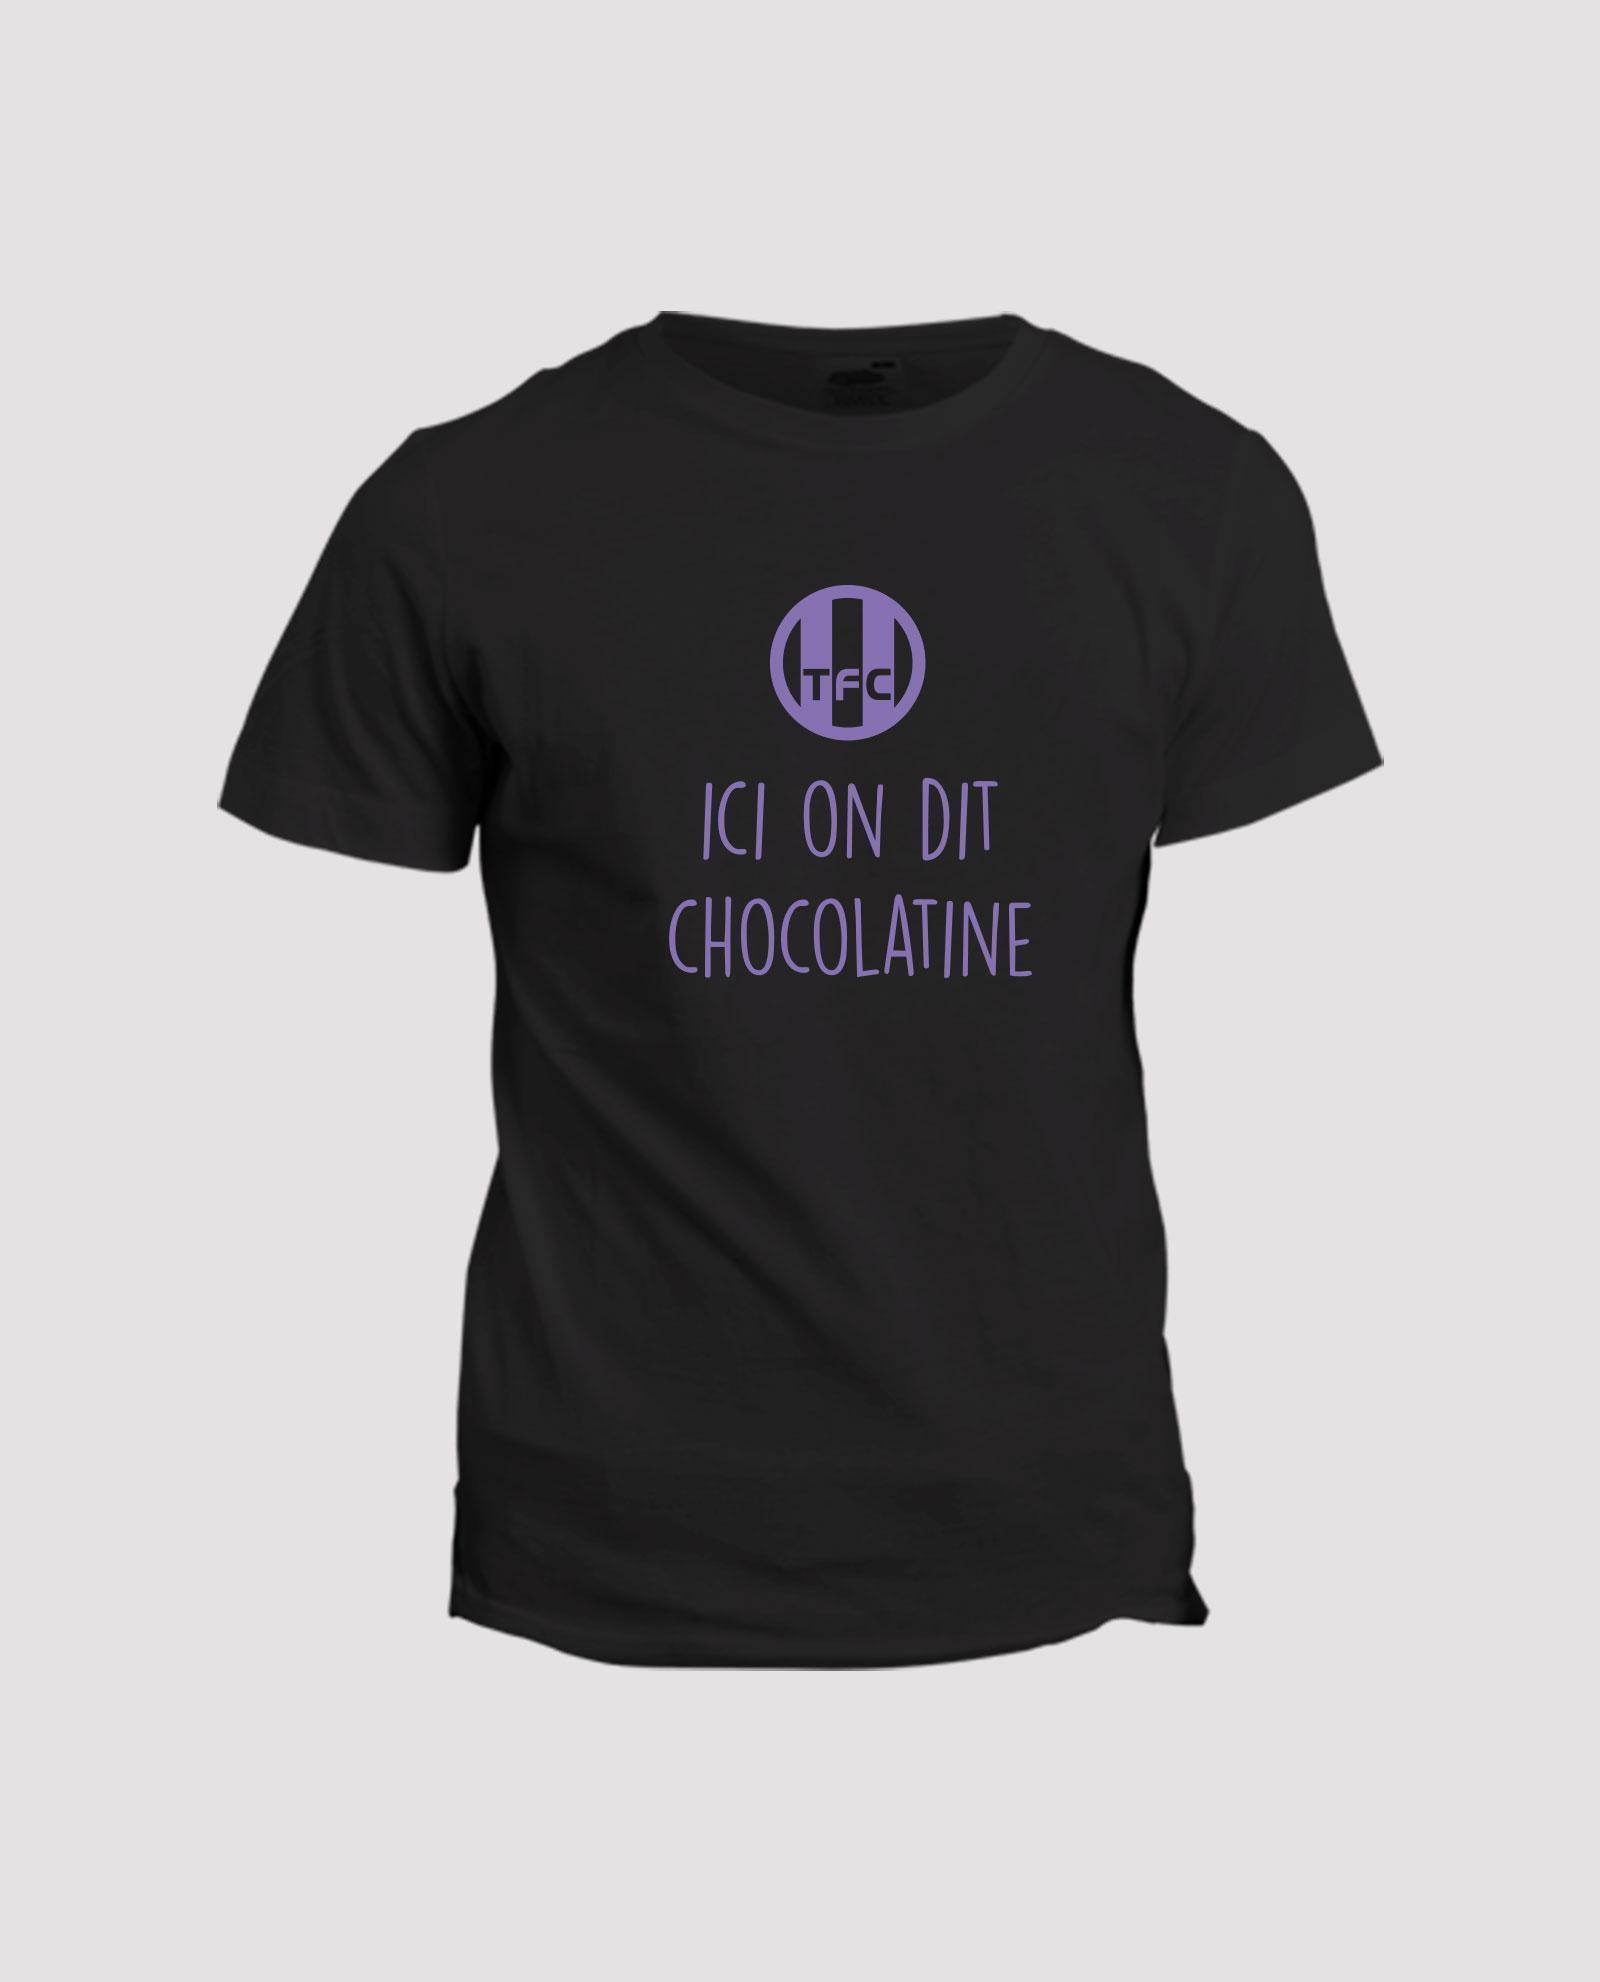 la-ligne-shop-t-shirt-noir-chant-supporter-football-soccer-toulouse-tfc-ici-on-dit-chocolatine